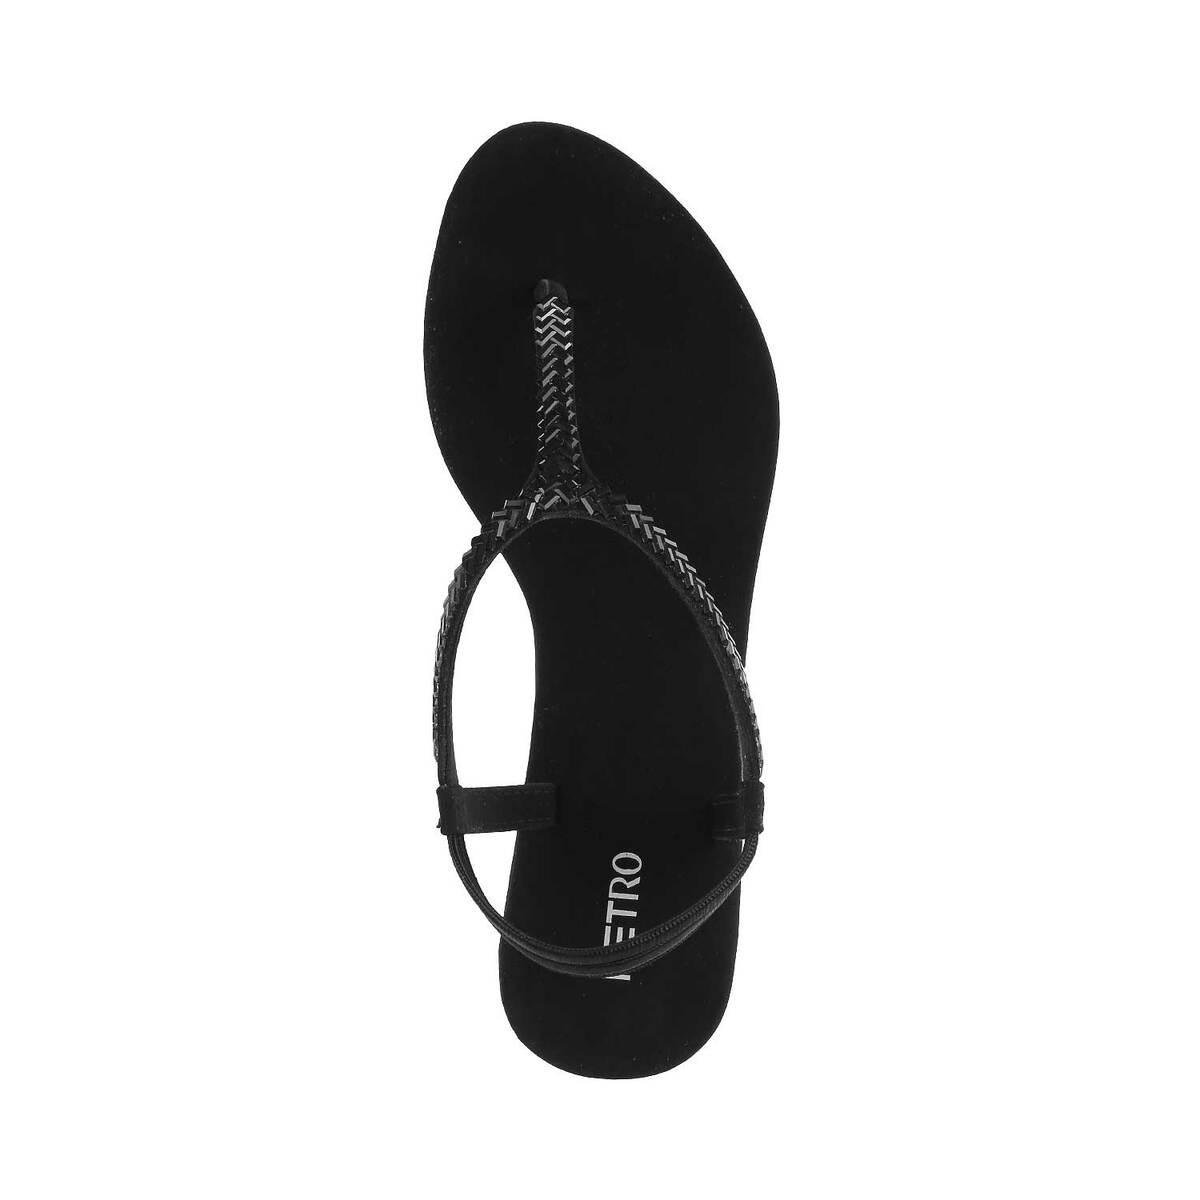 Stylestry Womens & Girls Black Block Heels Solid Sandals | Heels, Ankle  strap sandals heels, Womens chunky heels